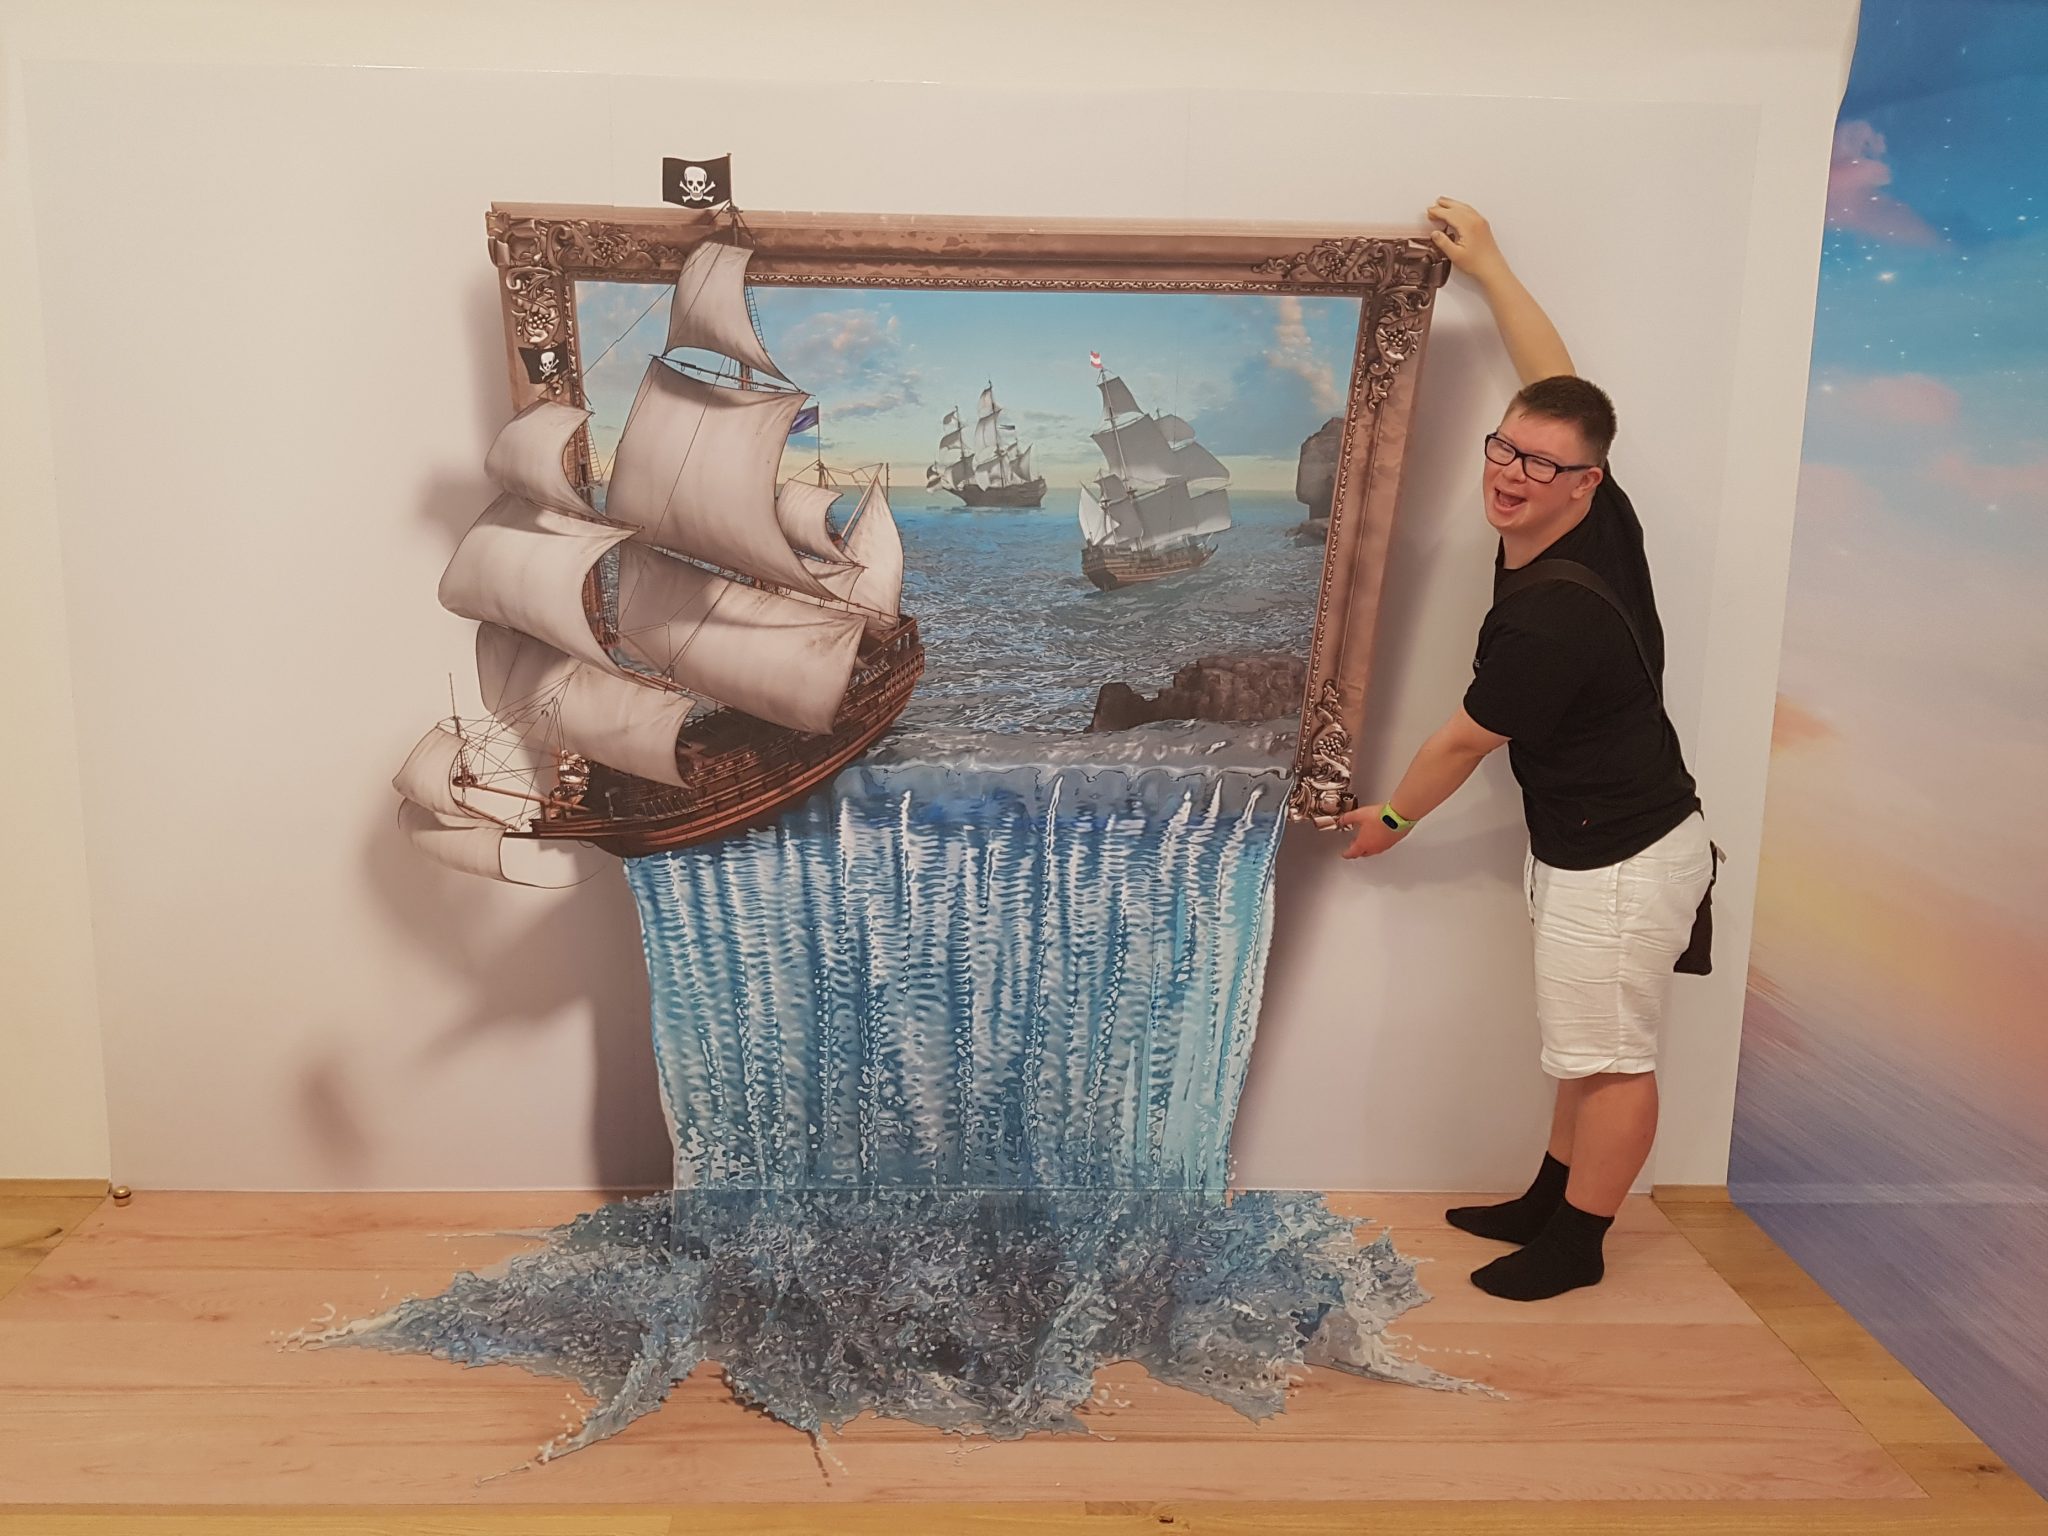 Foto: Max Eibl erfüllte sich mit mobiler Begleitung einen Reisewunsch – nach Wien ins 3D-PicArt-Museum und in den Prater. Den nächsten Ausflug plant er auch schon – er möchte gerne mit einem Schiff fahren. Fotocredit: Diakoniewerk